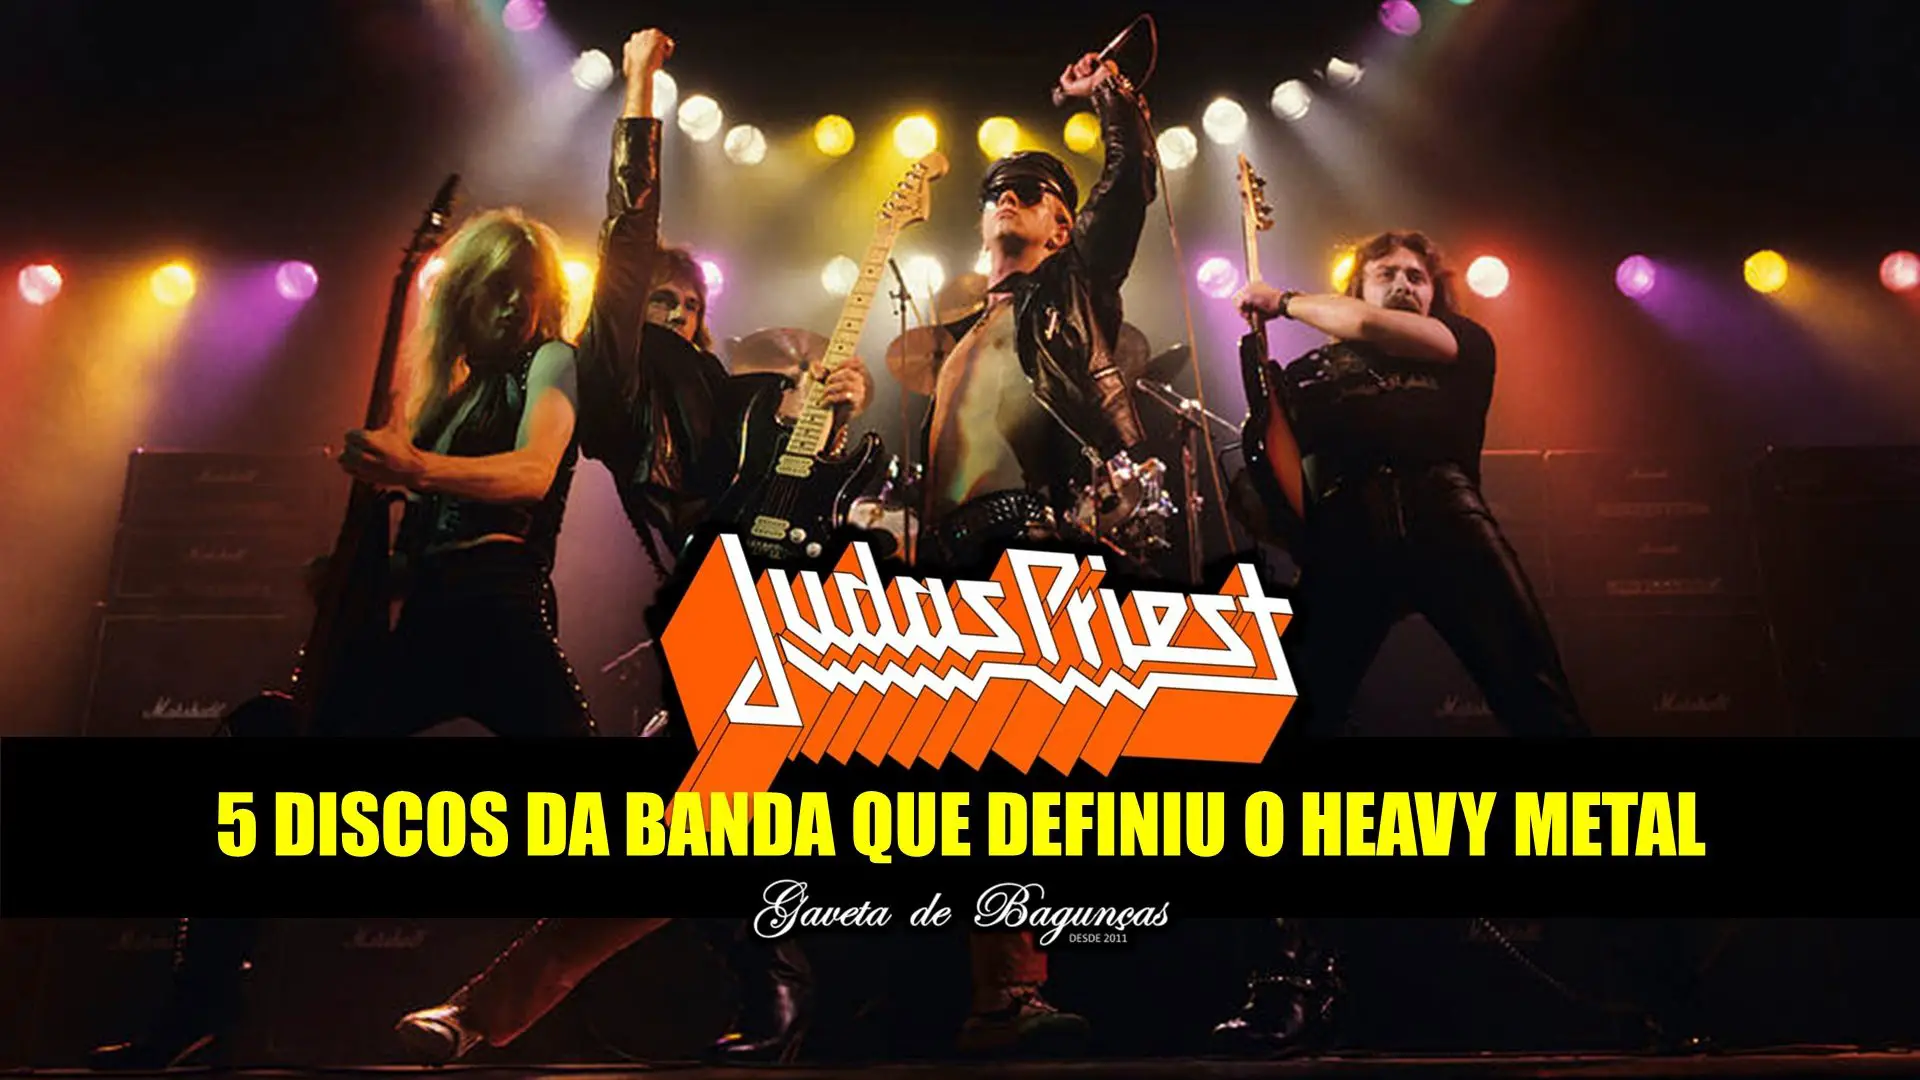 Judas Priest - Biografia Melhores Discos Músicas